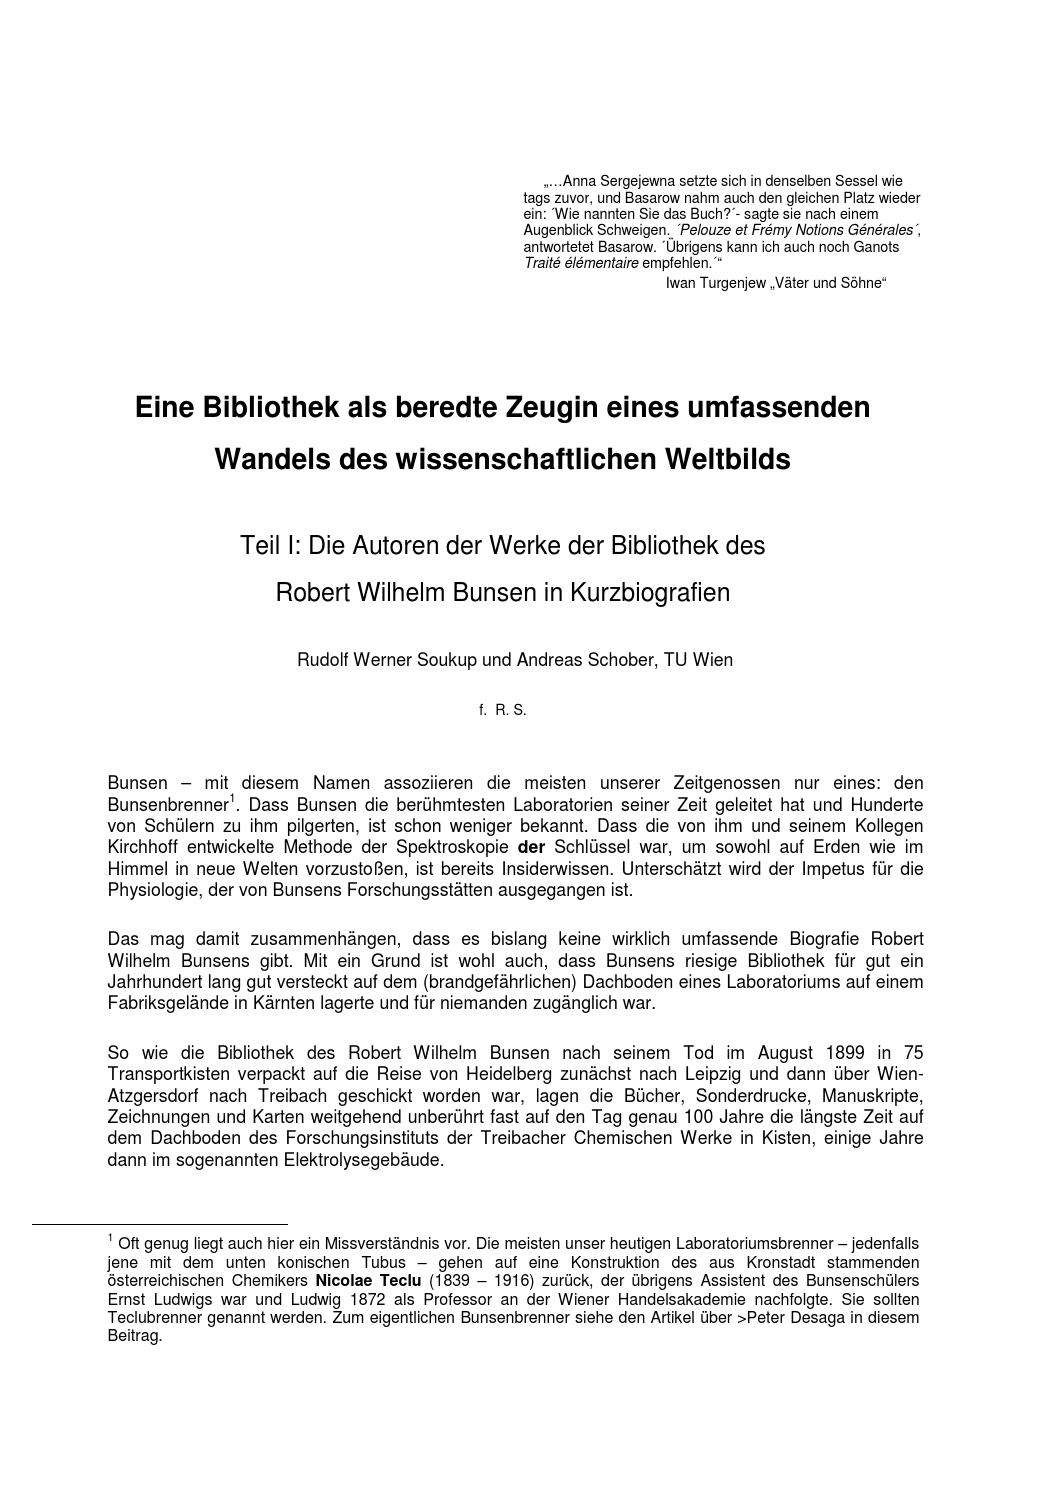 Natron Im Garten Neu Autoren Der Bunsenbibliothek Teil 1 by Auer Von Welsbach